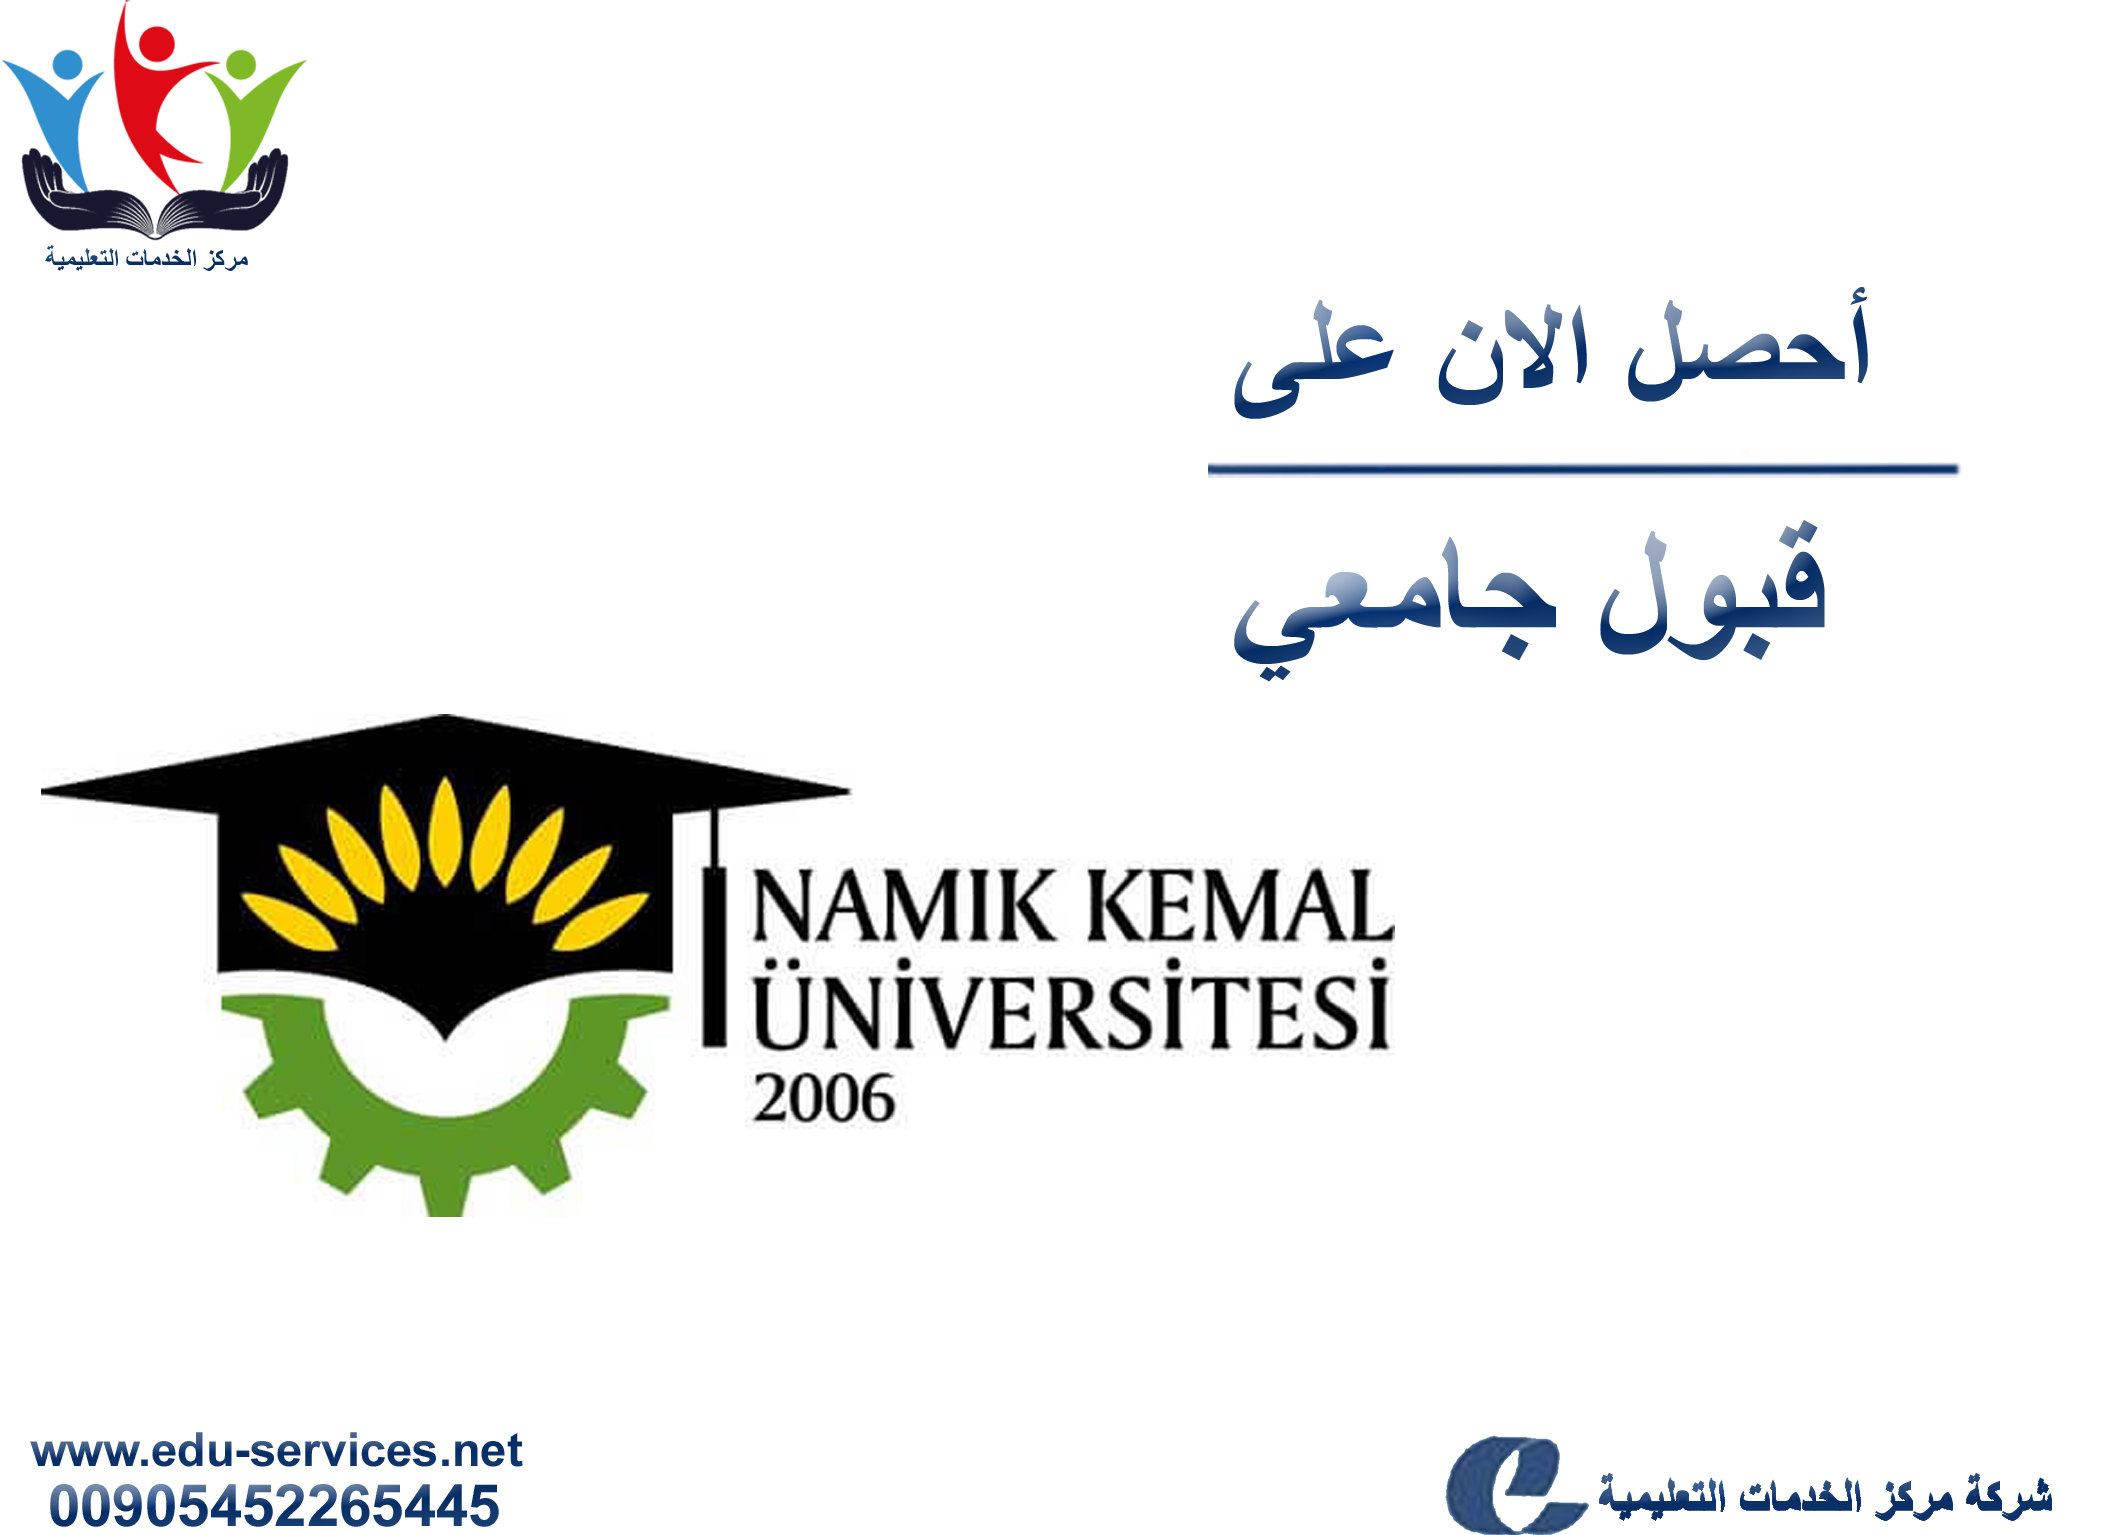 افتتاح التسجيل في جامعة نامق كمال للعام 2018-2019